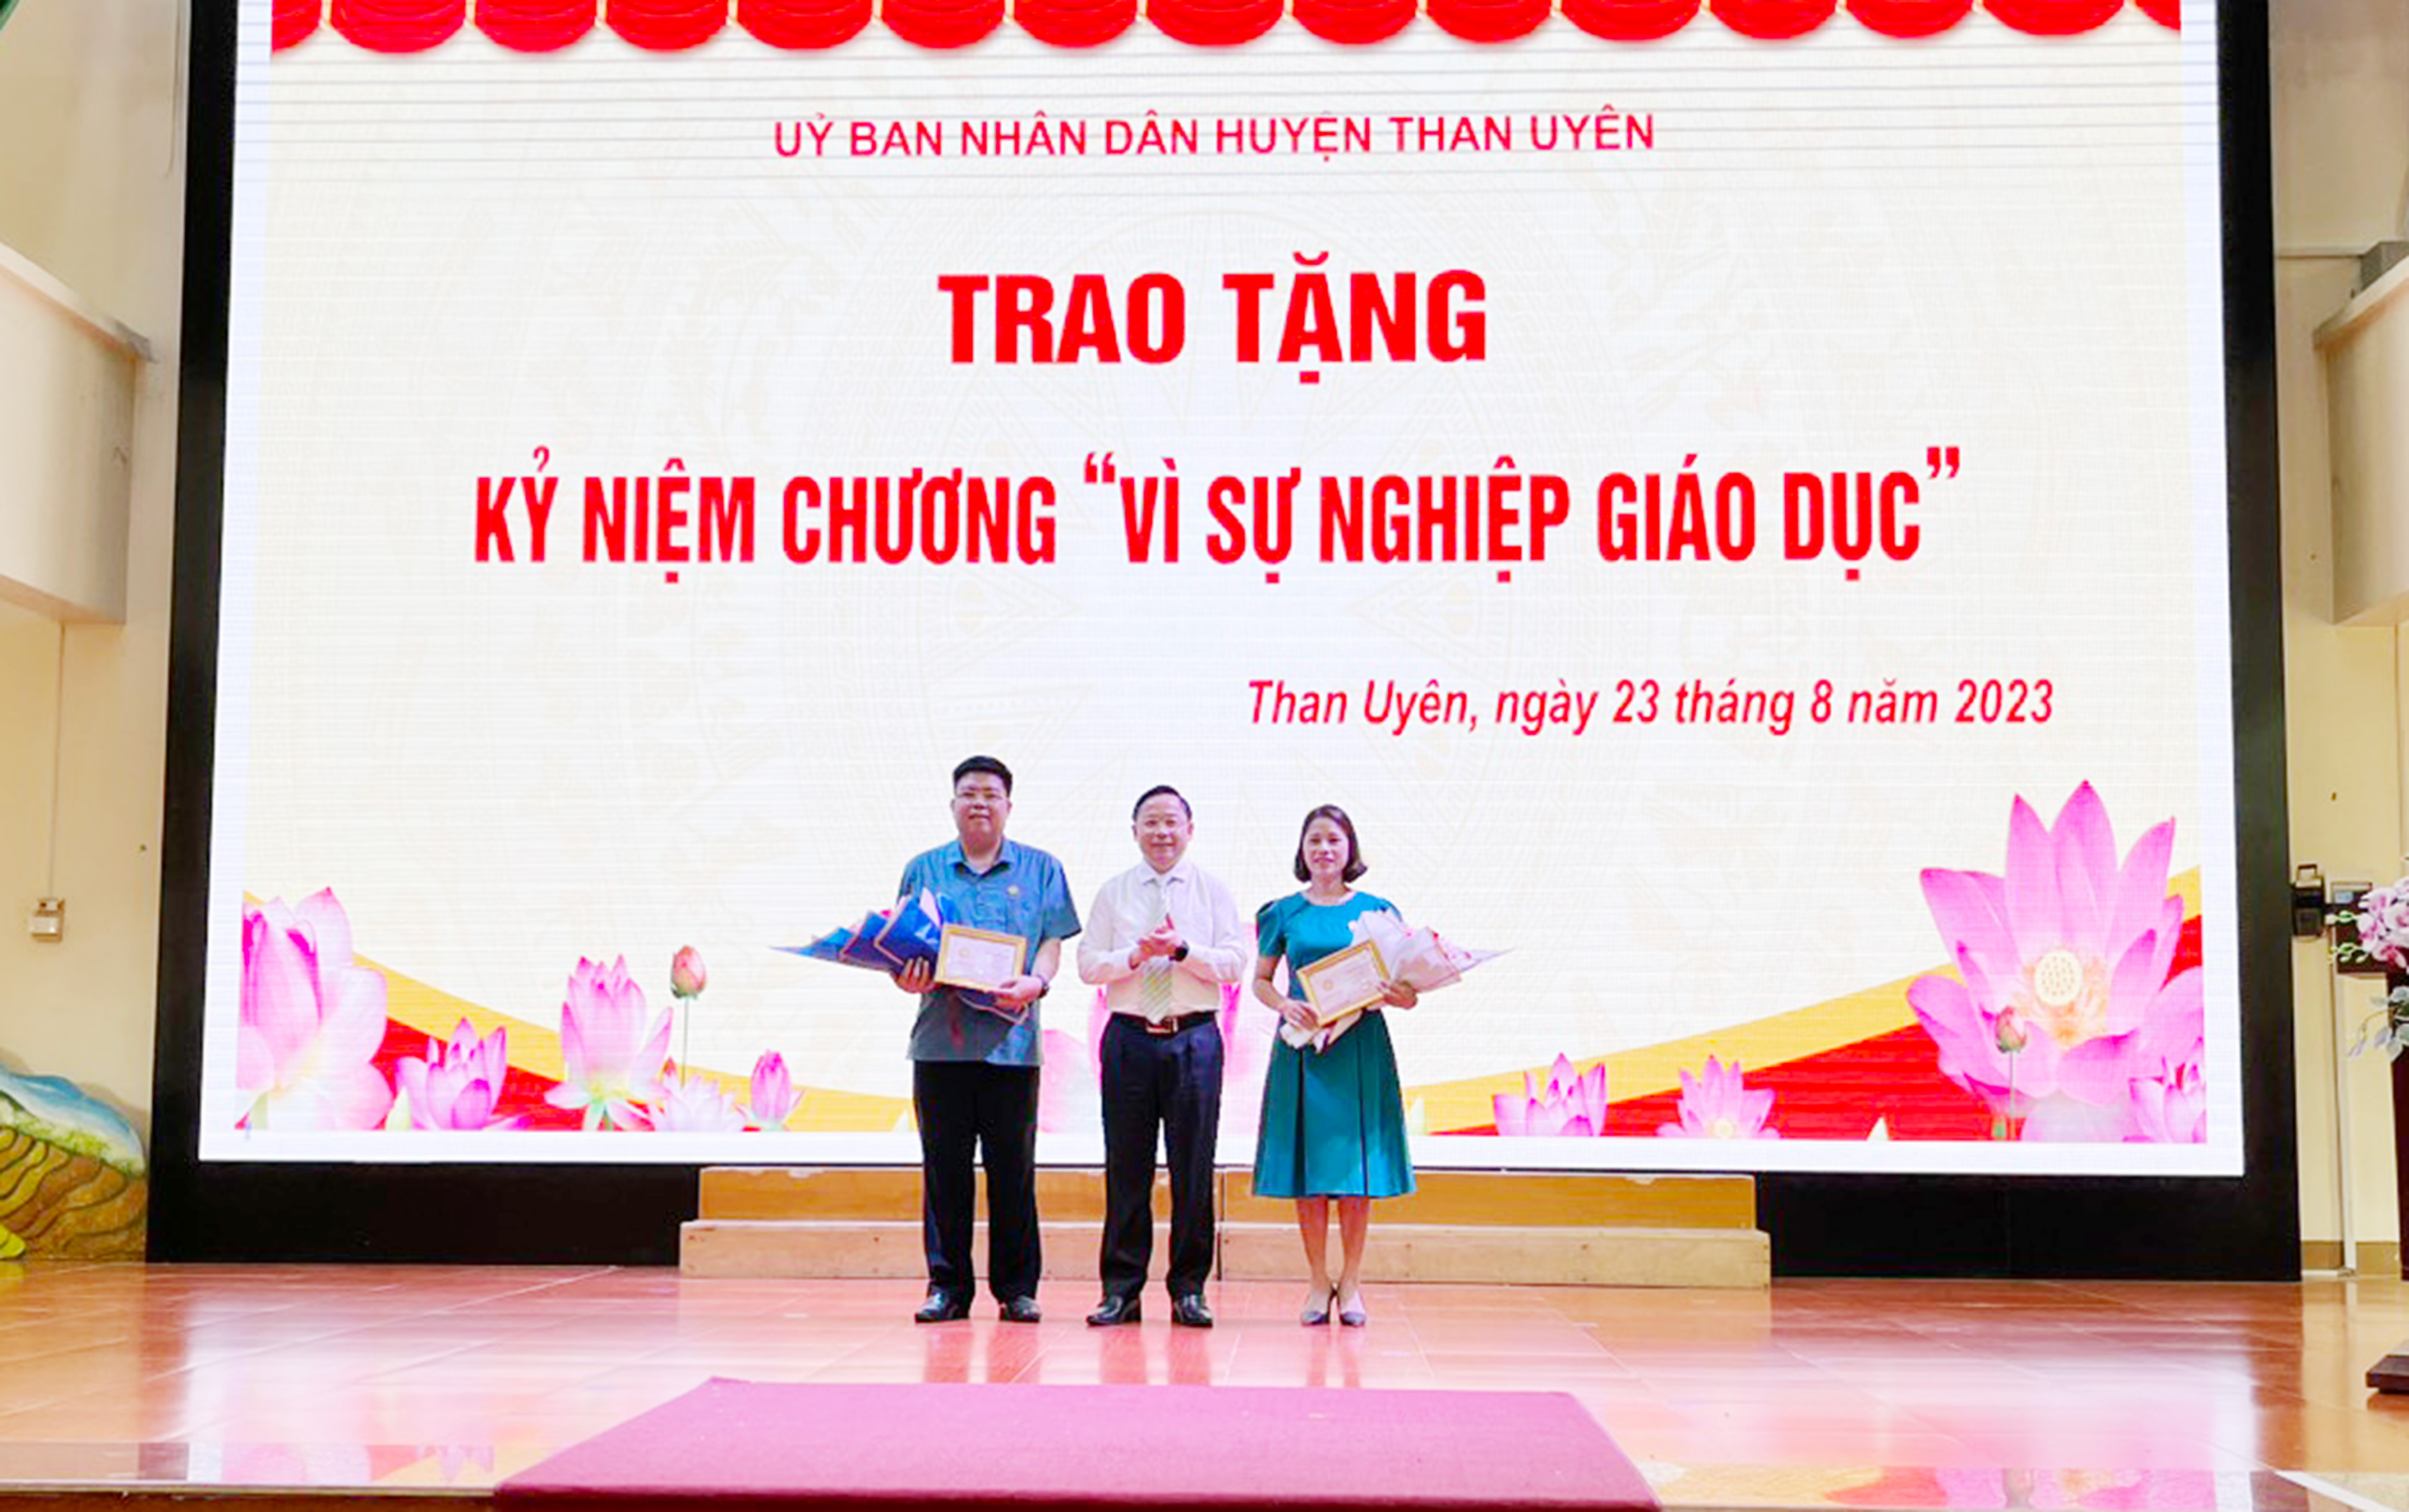 Đồng chí Đinh Trung Tuấn - Tỉnh ủy viên, Giám đốc Sở Giáo dục và Đào tạo trao Kỷ niệm chương “Vì sự nghiệp Giáo dục” cho 2 cá nhân